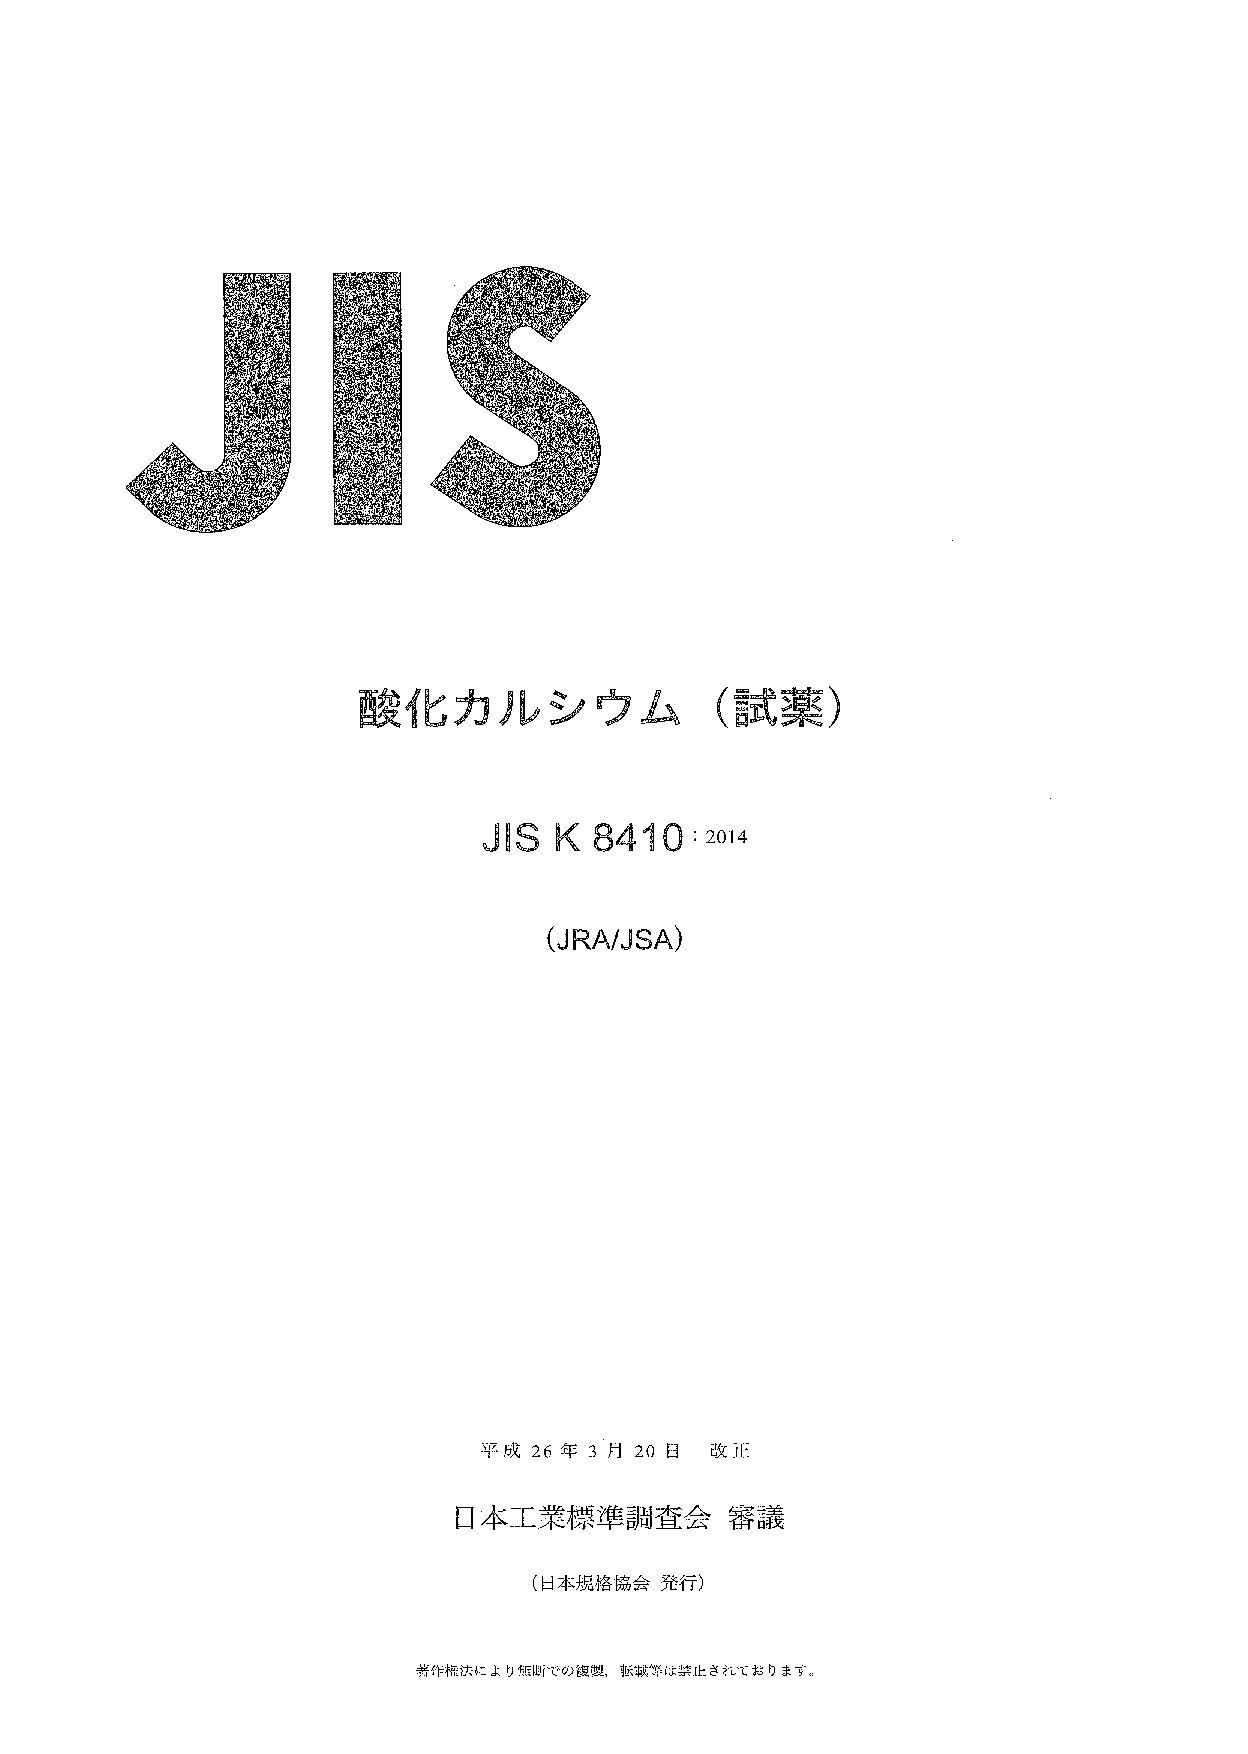 JIS K 8410:2014